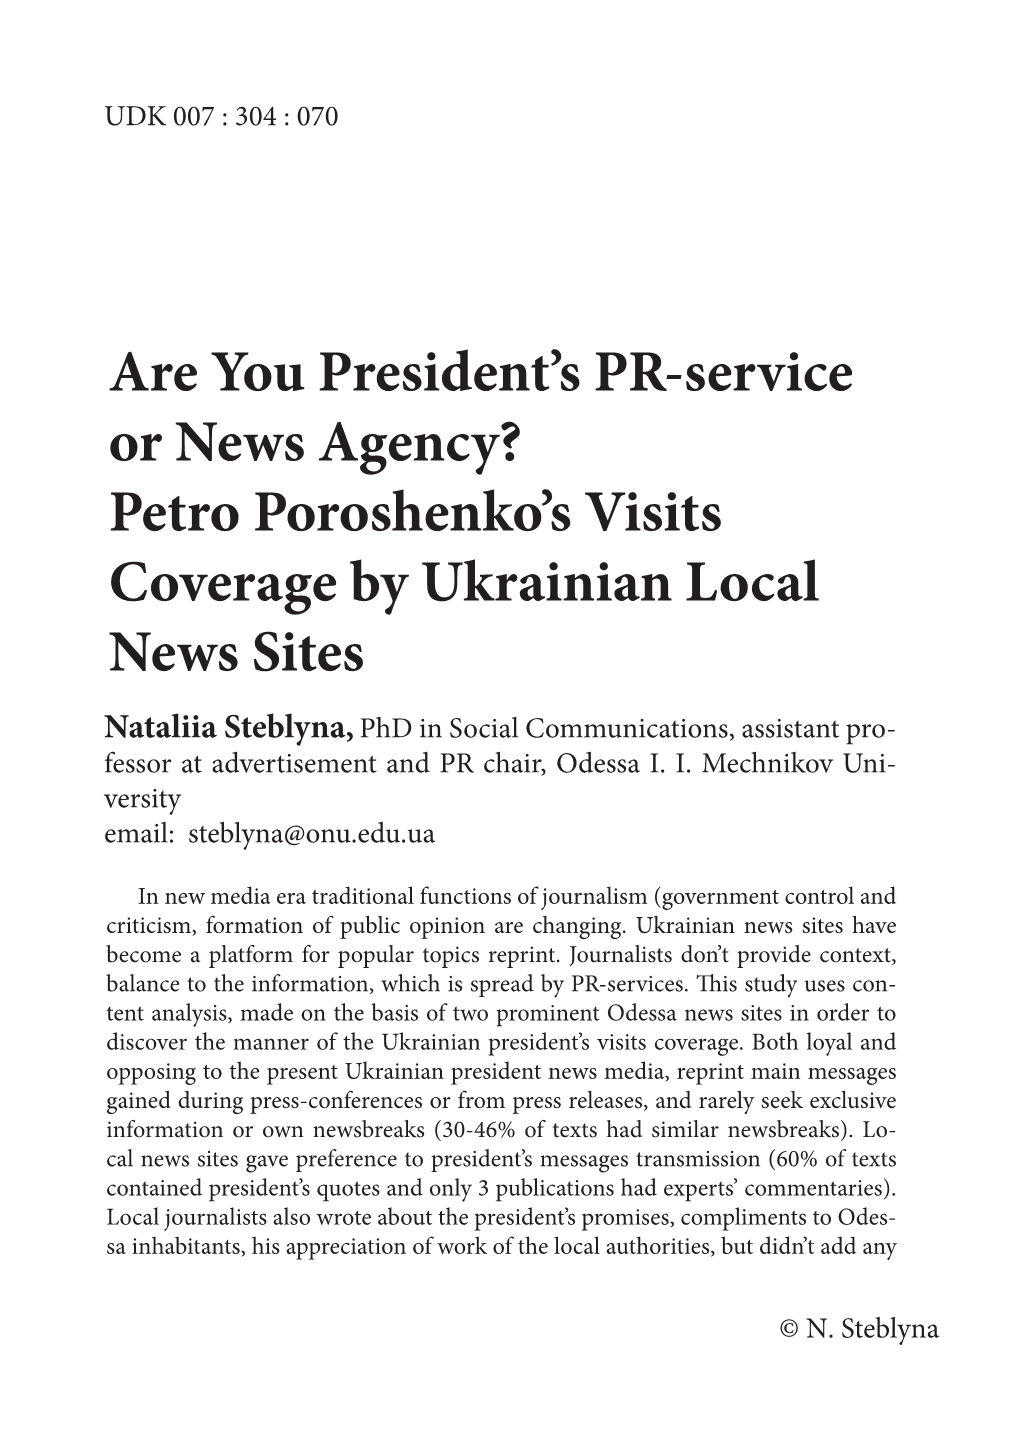 Are You President's PR-Service Or News Agency? Petro Poroshenko's